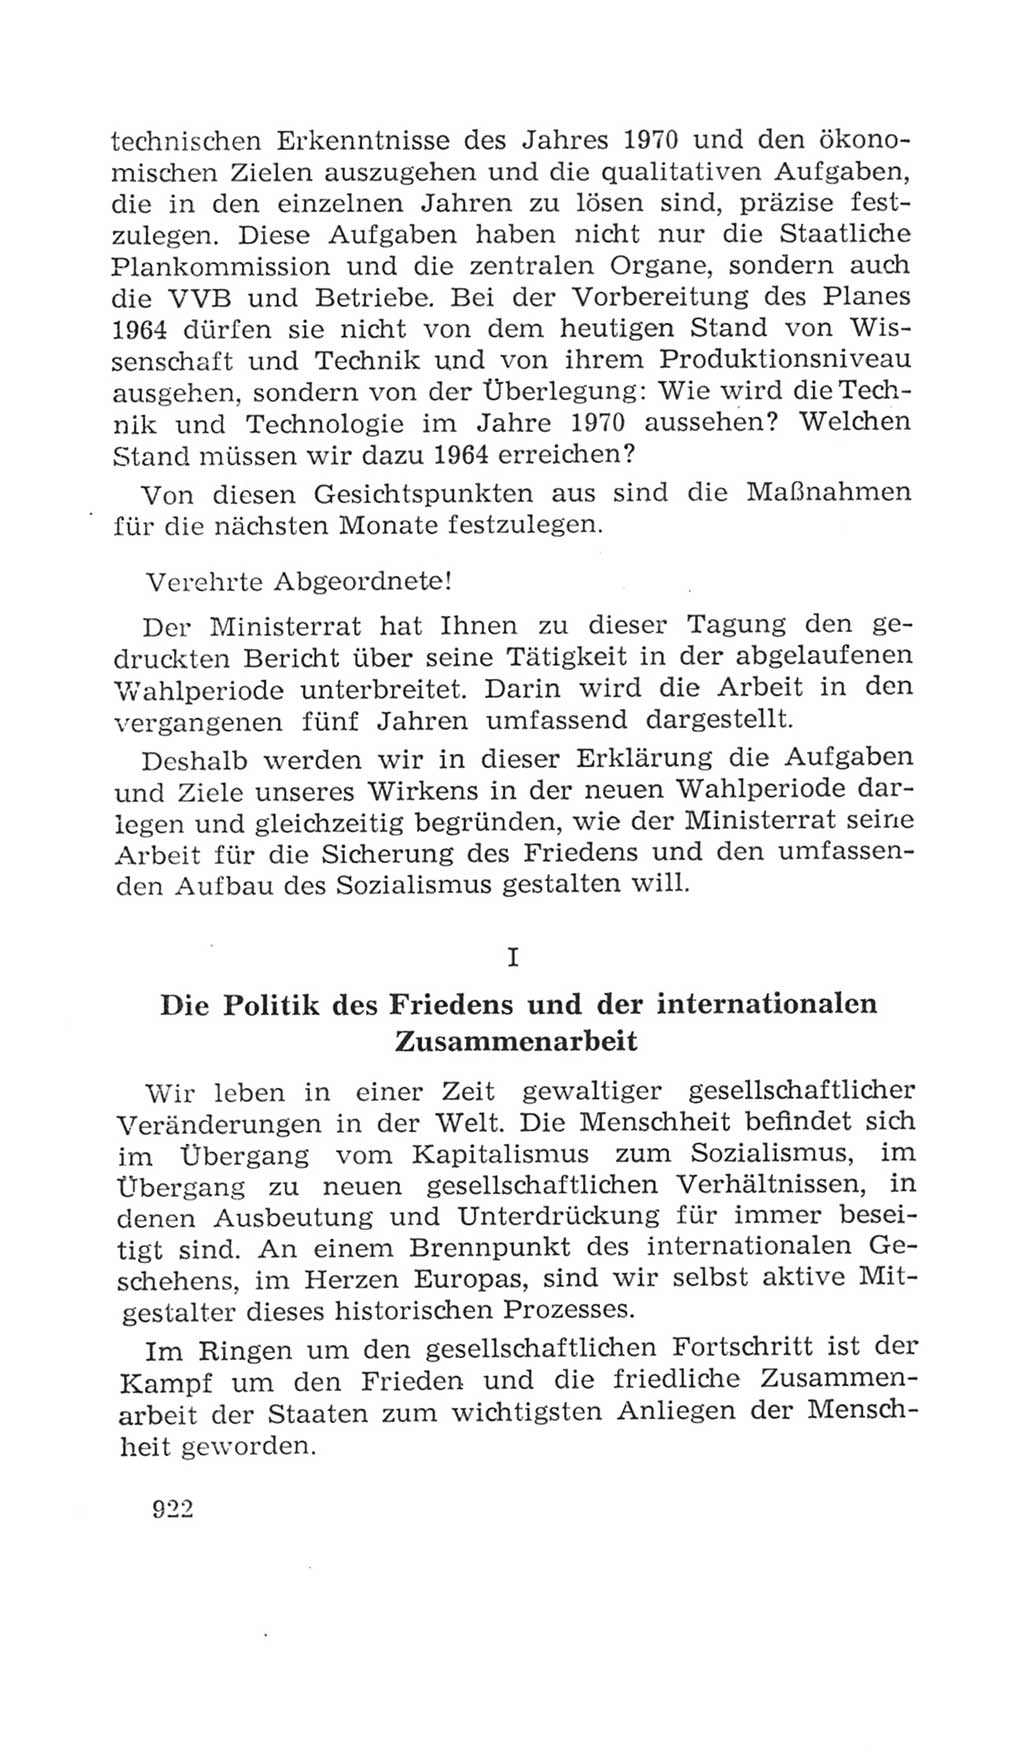 Volkskammer (VK) der Deutschen Demokratischen Republik (DDR), 4. Wahlperiode 1963-1967, Seite 922 (VK. DDR 4. WP. 1963-1967, S. 922)